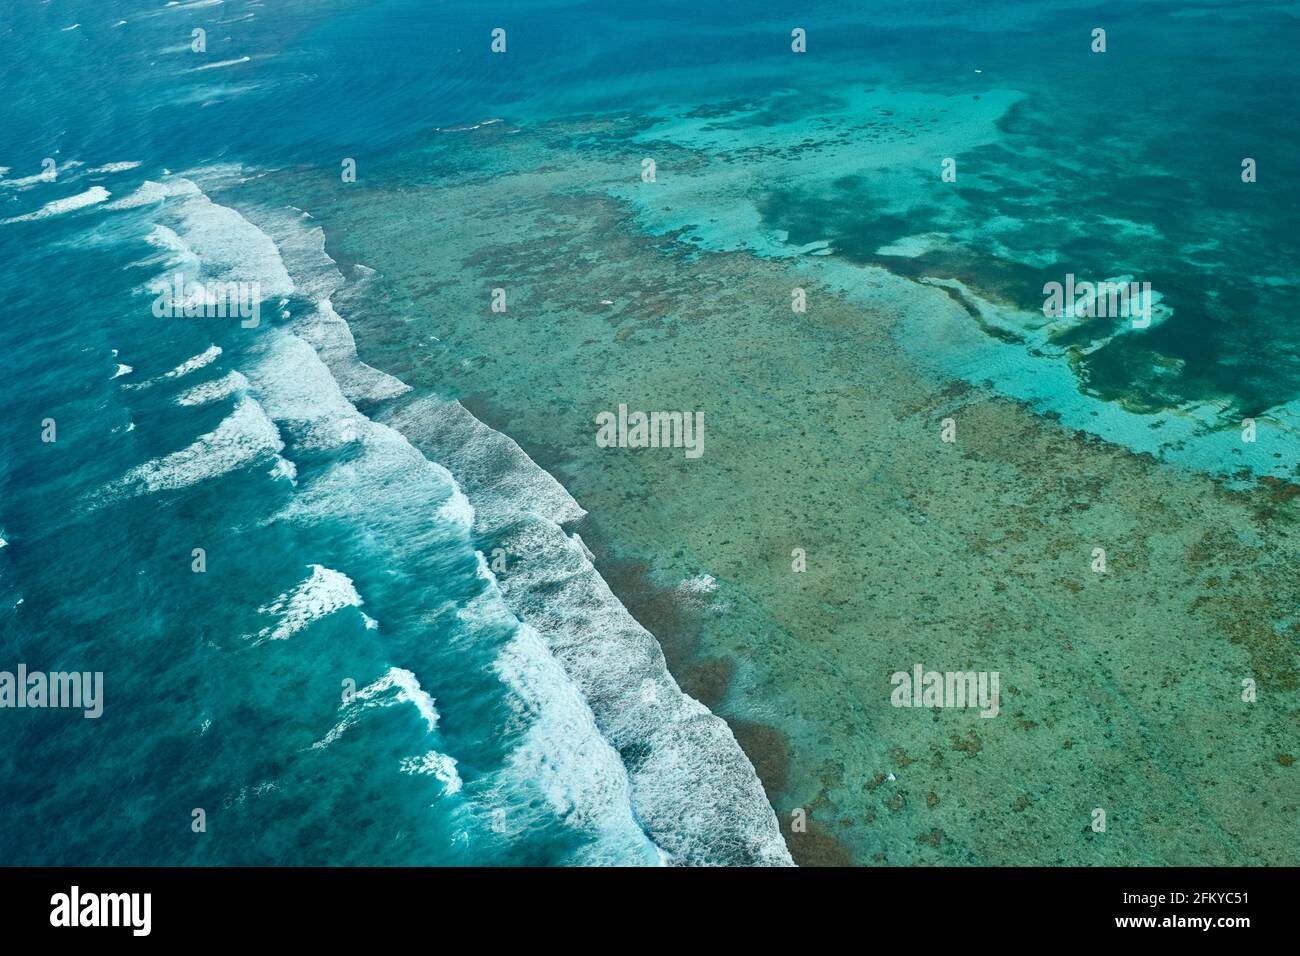 La barriera Corallina del Belize, la 2nd più grande del mondo dopo l'Australia, e parte del Mesoamericano Barrier Reef System. Sito patrimonio dell'umanità dell'UNESCO. Foto Stock